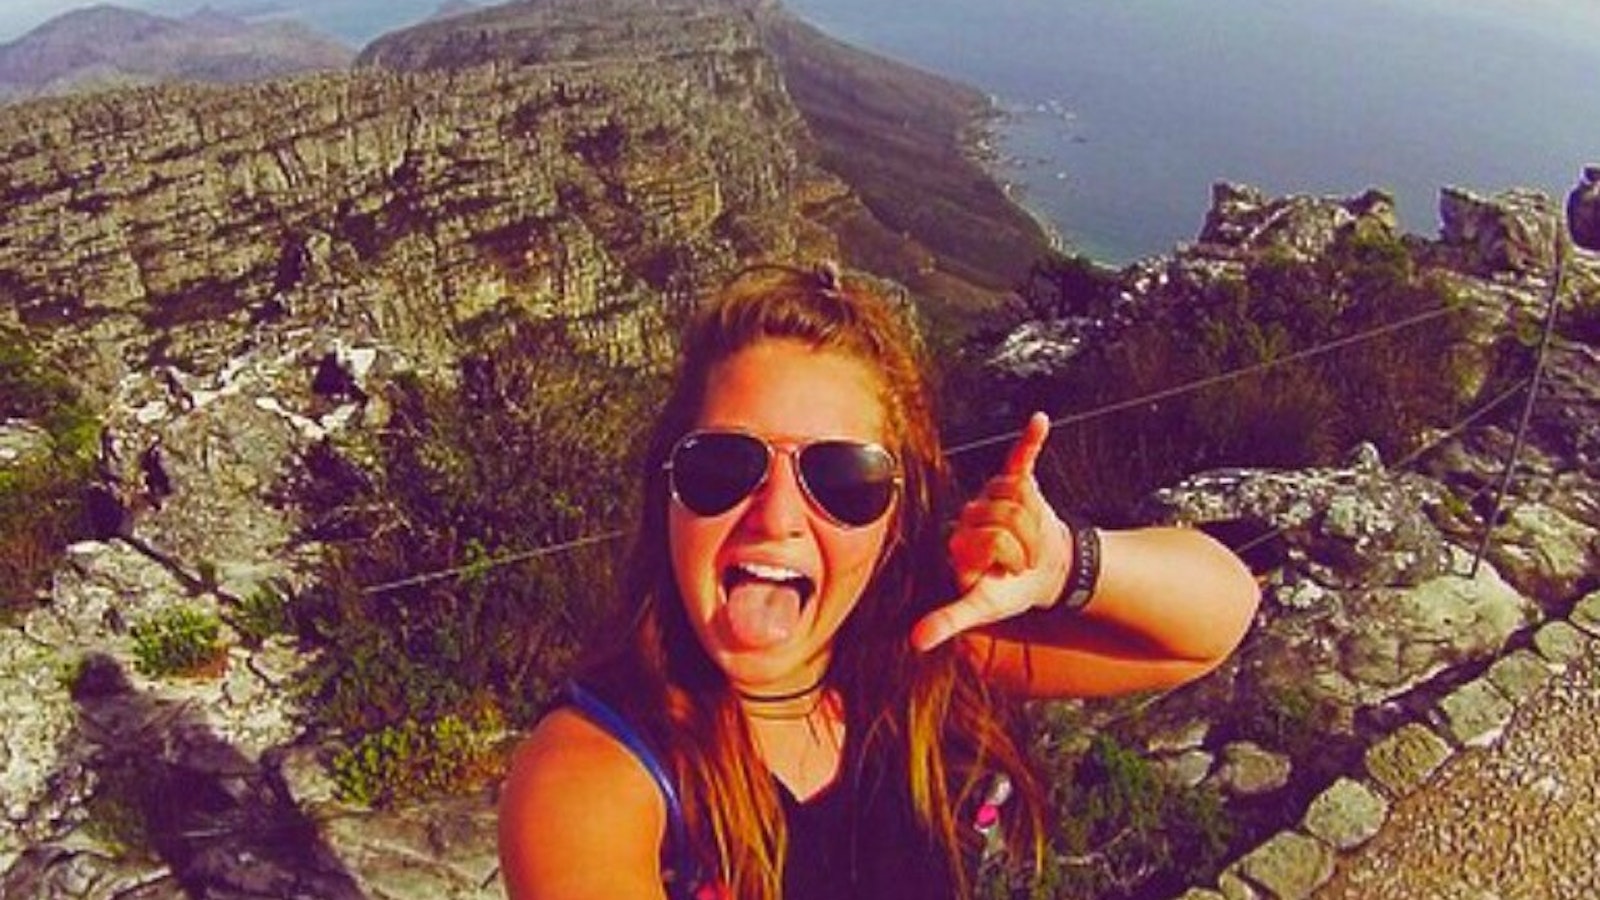 Julianna conquers Table Mountain